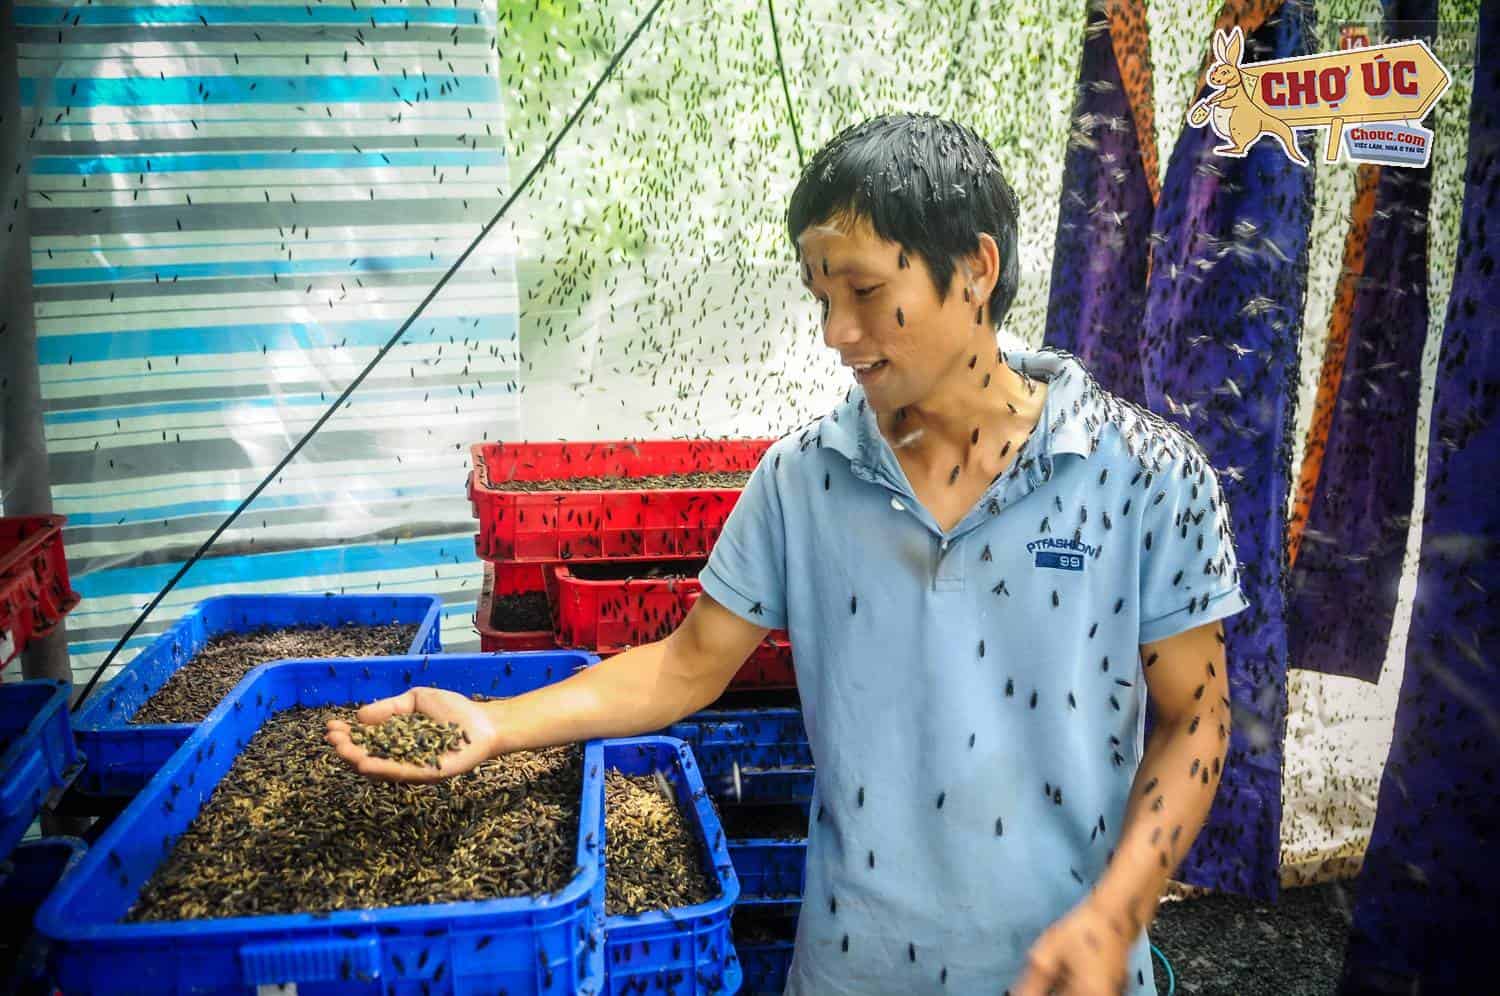 Chàng kỹ sư Sài Gòn bỏ việc về quê nuôi ruồi, doanh thu 80 triệu đồng/tháng: Từng bị gia đình phản đối, bạn bè cười nhạo - Ảnh 4.